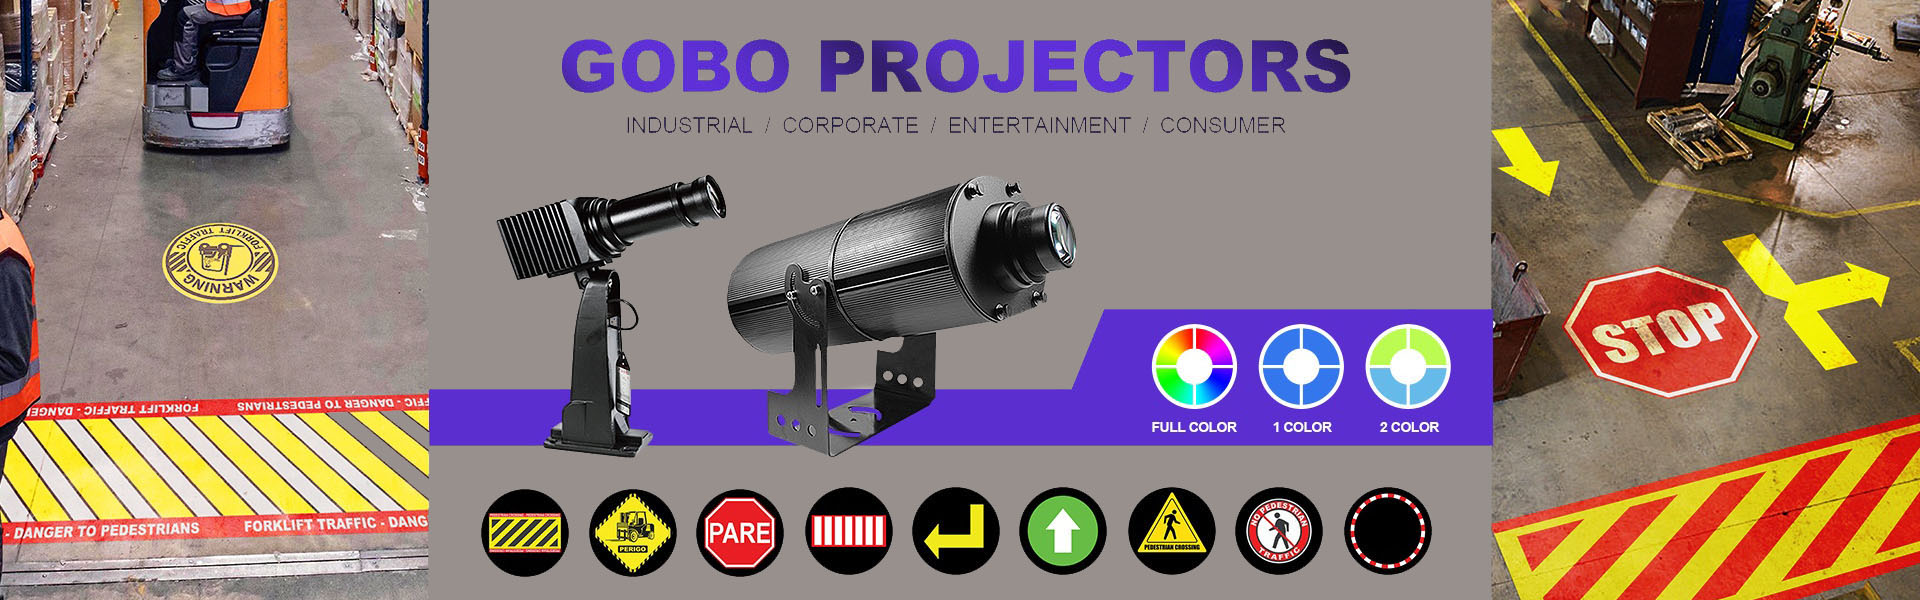 جهاز عرض شعار Gobbo ، LED Work Light ، LED Forklift Light,Wetech Electronic Technology Limited